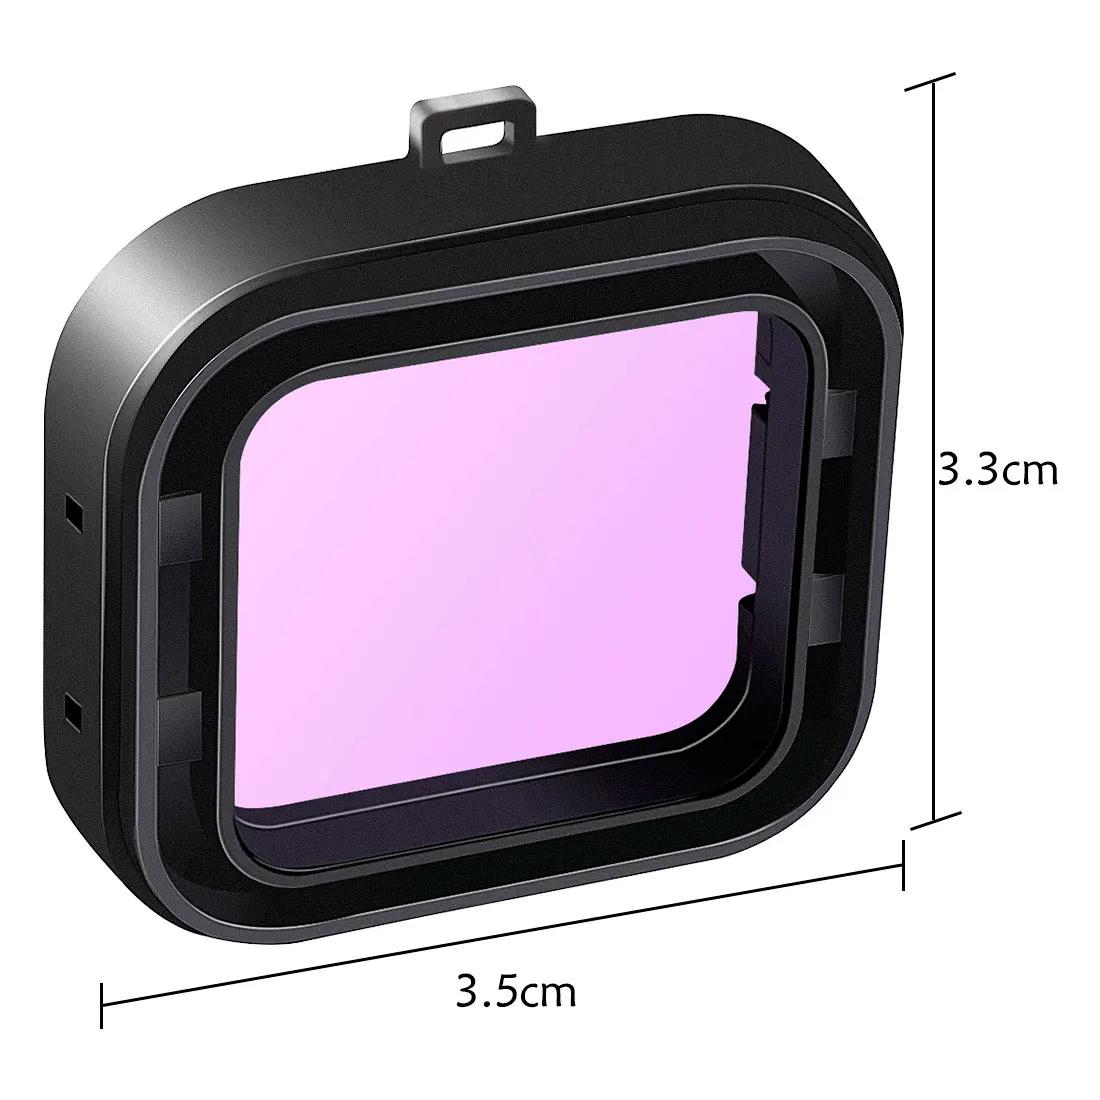 1-Pack Фильтры комплект красный пурпурный трубка Подводное камера объектив цветной фильтр для gopro hero4/hero3+ черный супер костюм Корпус чехол